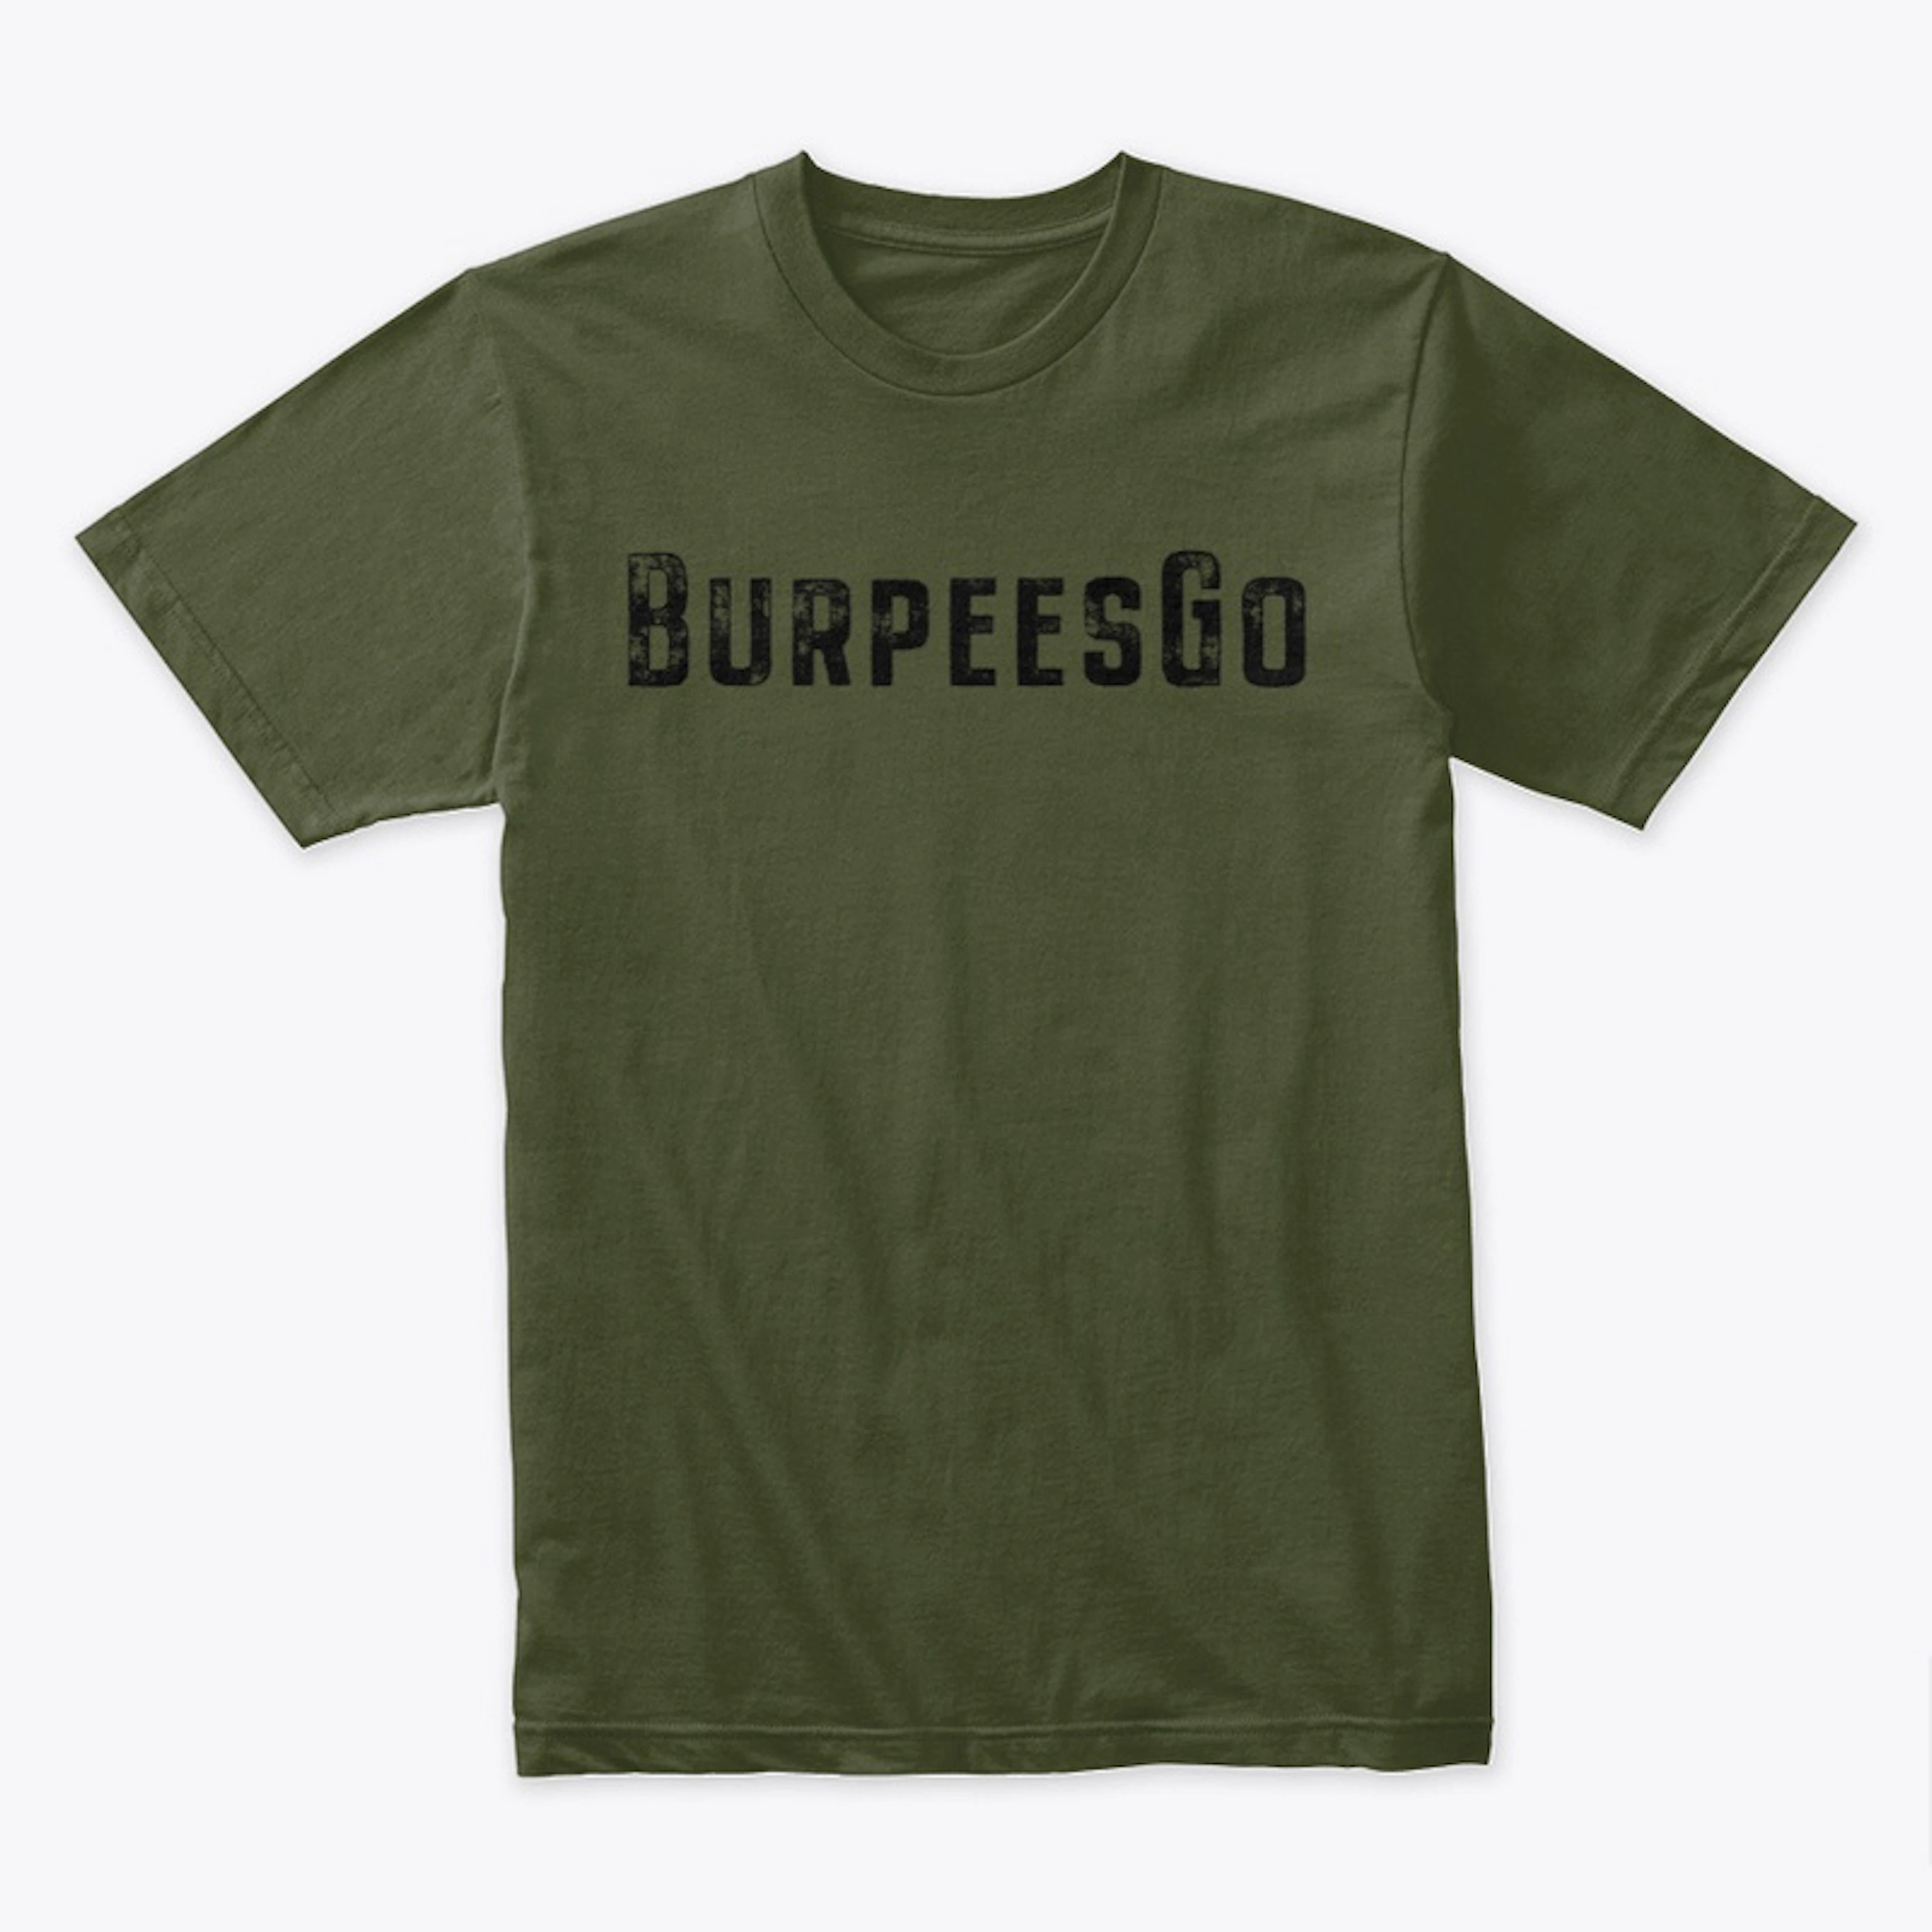 Official BurpeesGo Adult tee